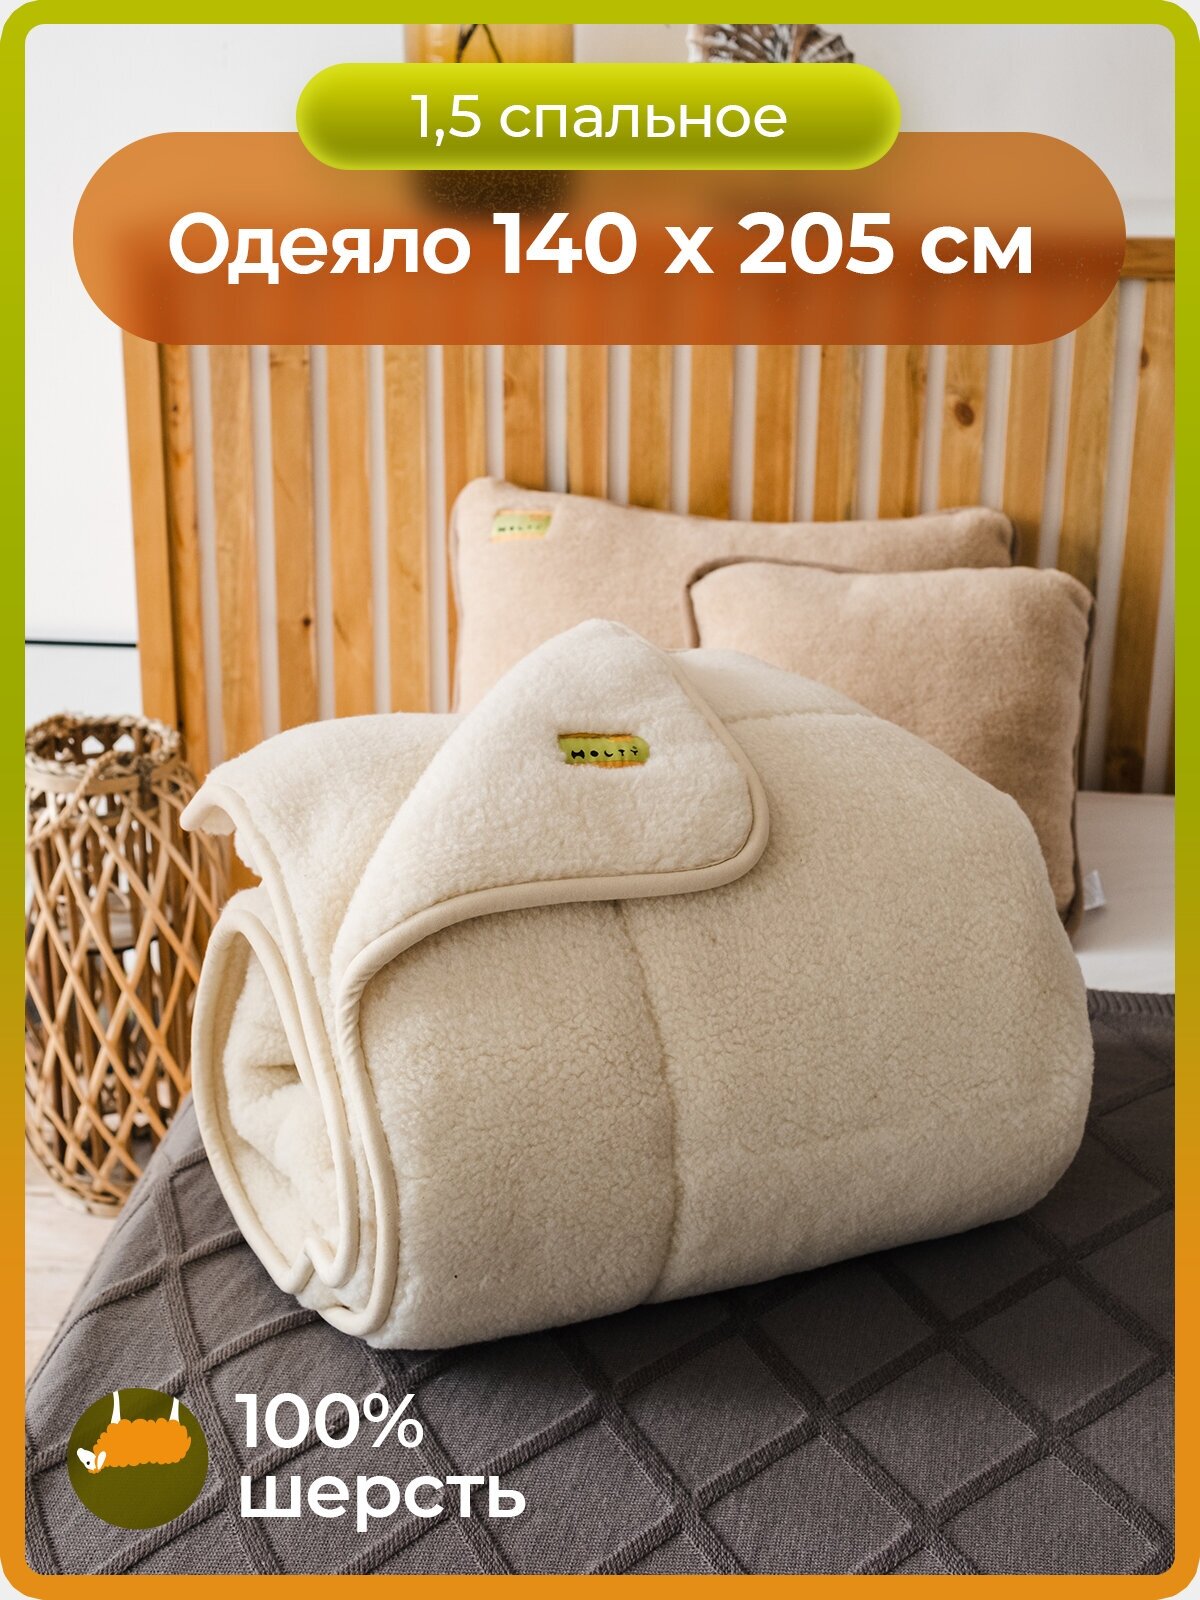 Одеяло шерстяное 1,5 спальное холти теплое зимнее для сна Оксфорд (140*205)